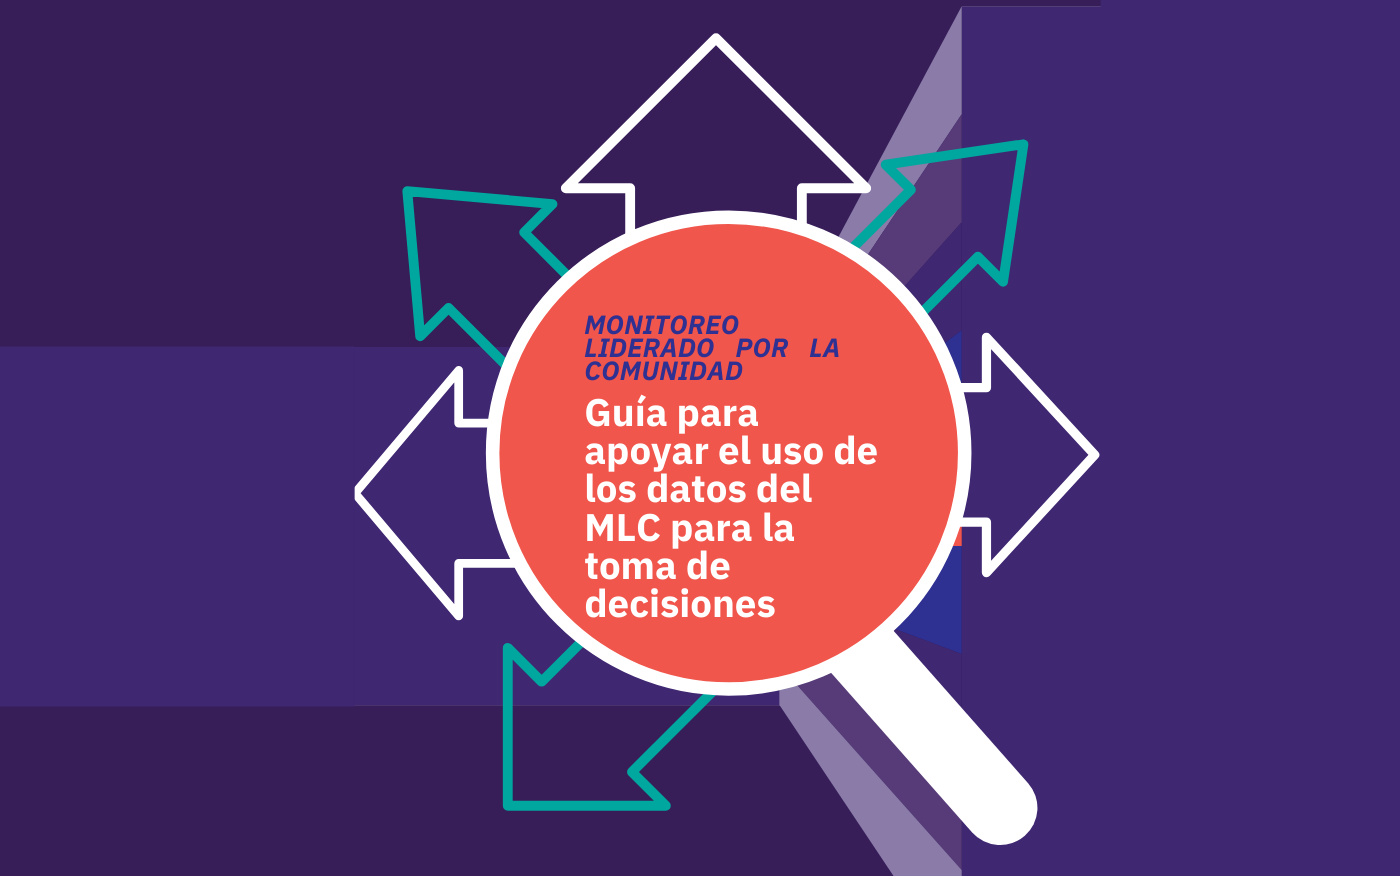 Guía para apoyar el uso de los datos del MLC para la toma de decisiones